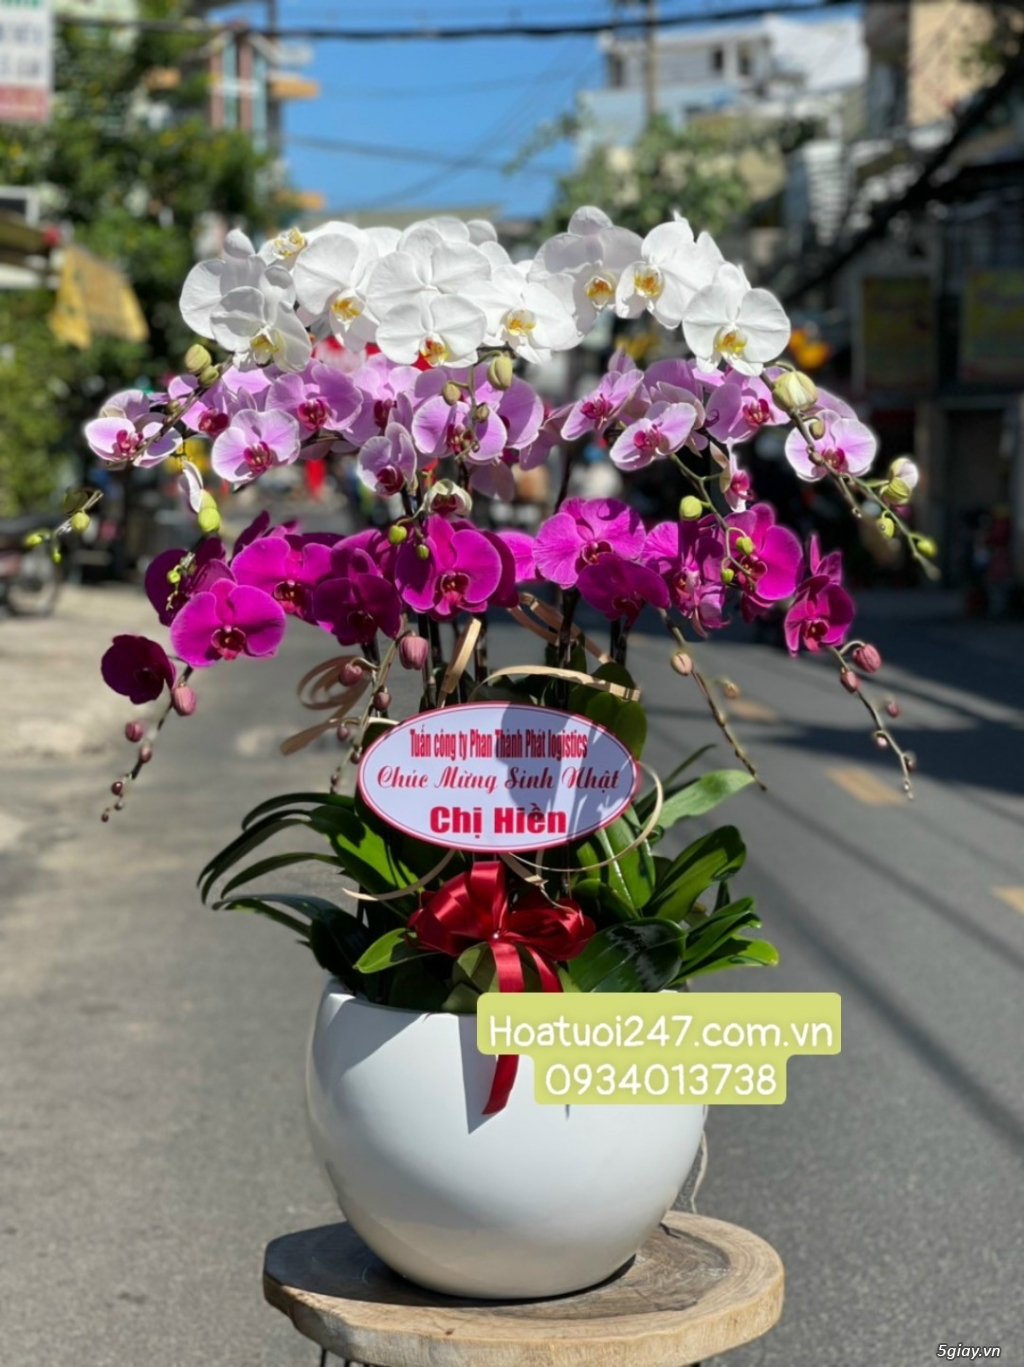 Shop hoa tươi Lan Hồ Điệp tại Thuận An Bình Dương 0934013738 - 13